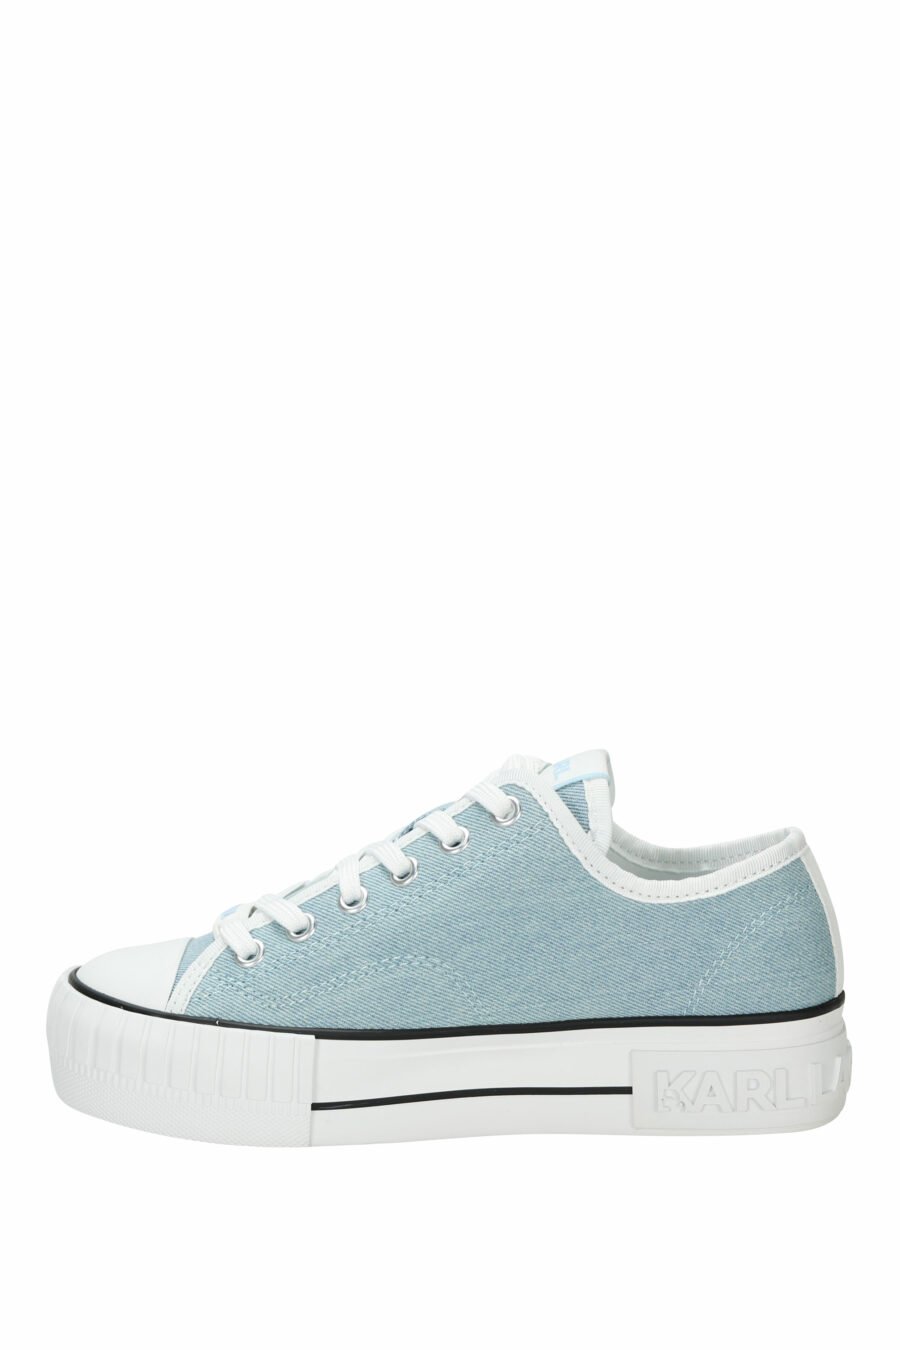 Zapatillas azul claro estilo "converse" con minilogo de goma "karl" - 5059529384691 2